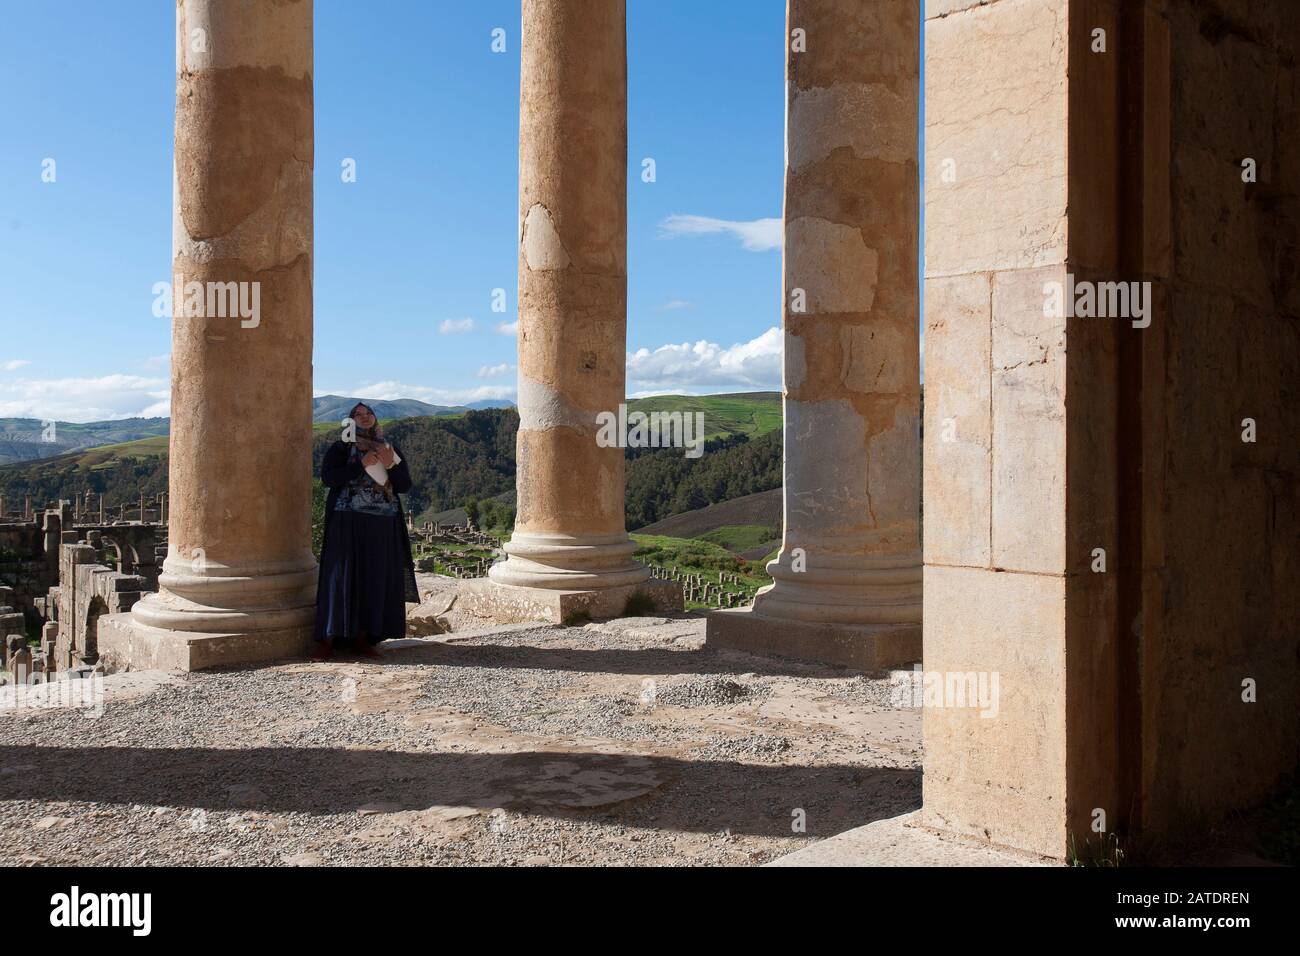 Temple de Sptimius Severus dans les ruines romaines anciennes de Djemilla, site classé au patrimoine mondial de l'UNESCO dans le nord de l'Algérie, près de Setif. Banque D'Images